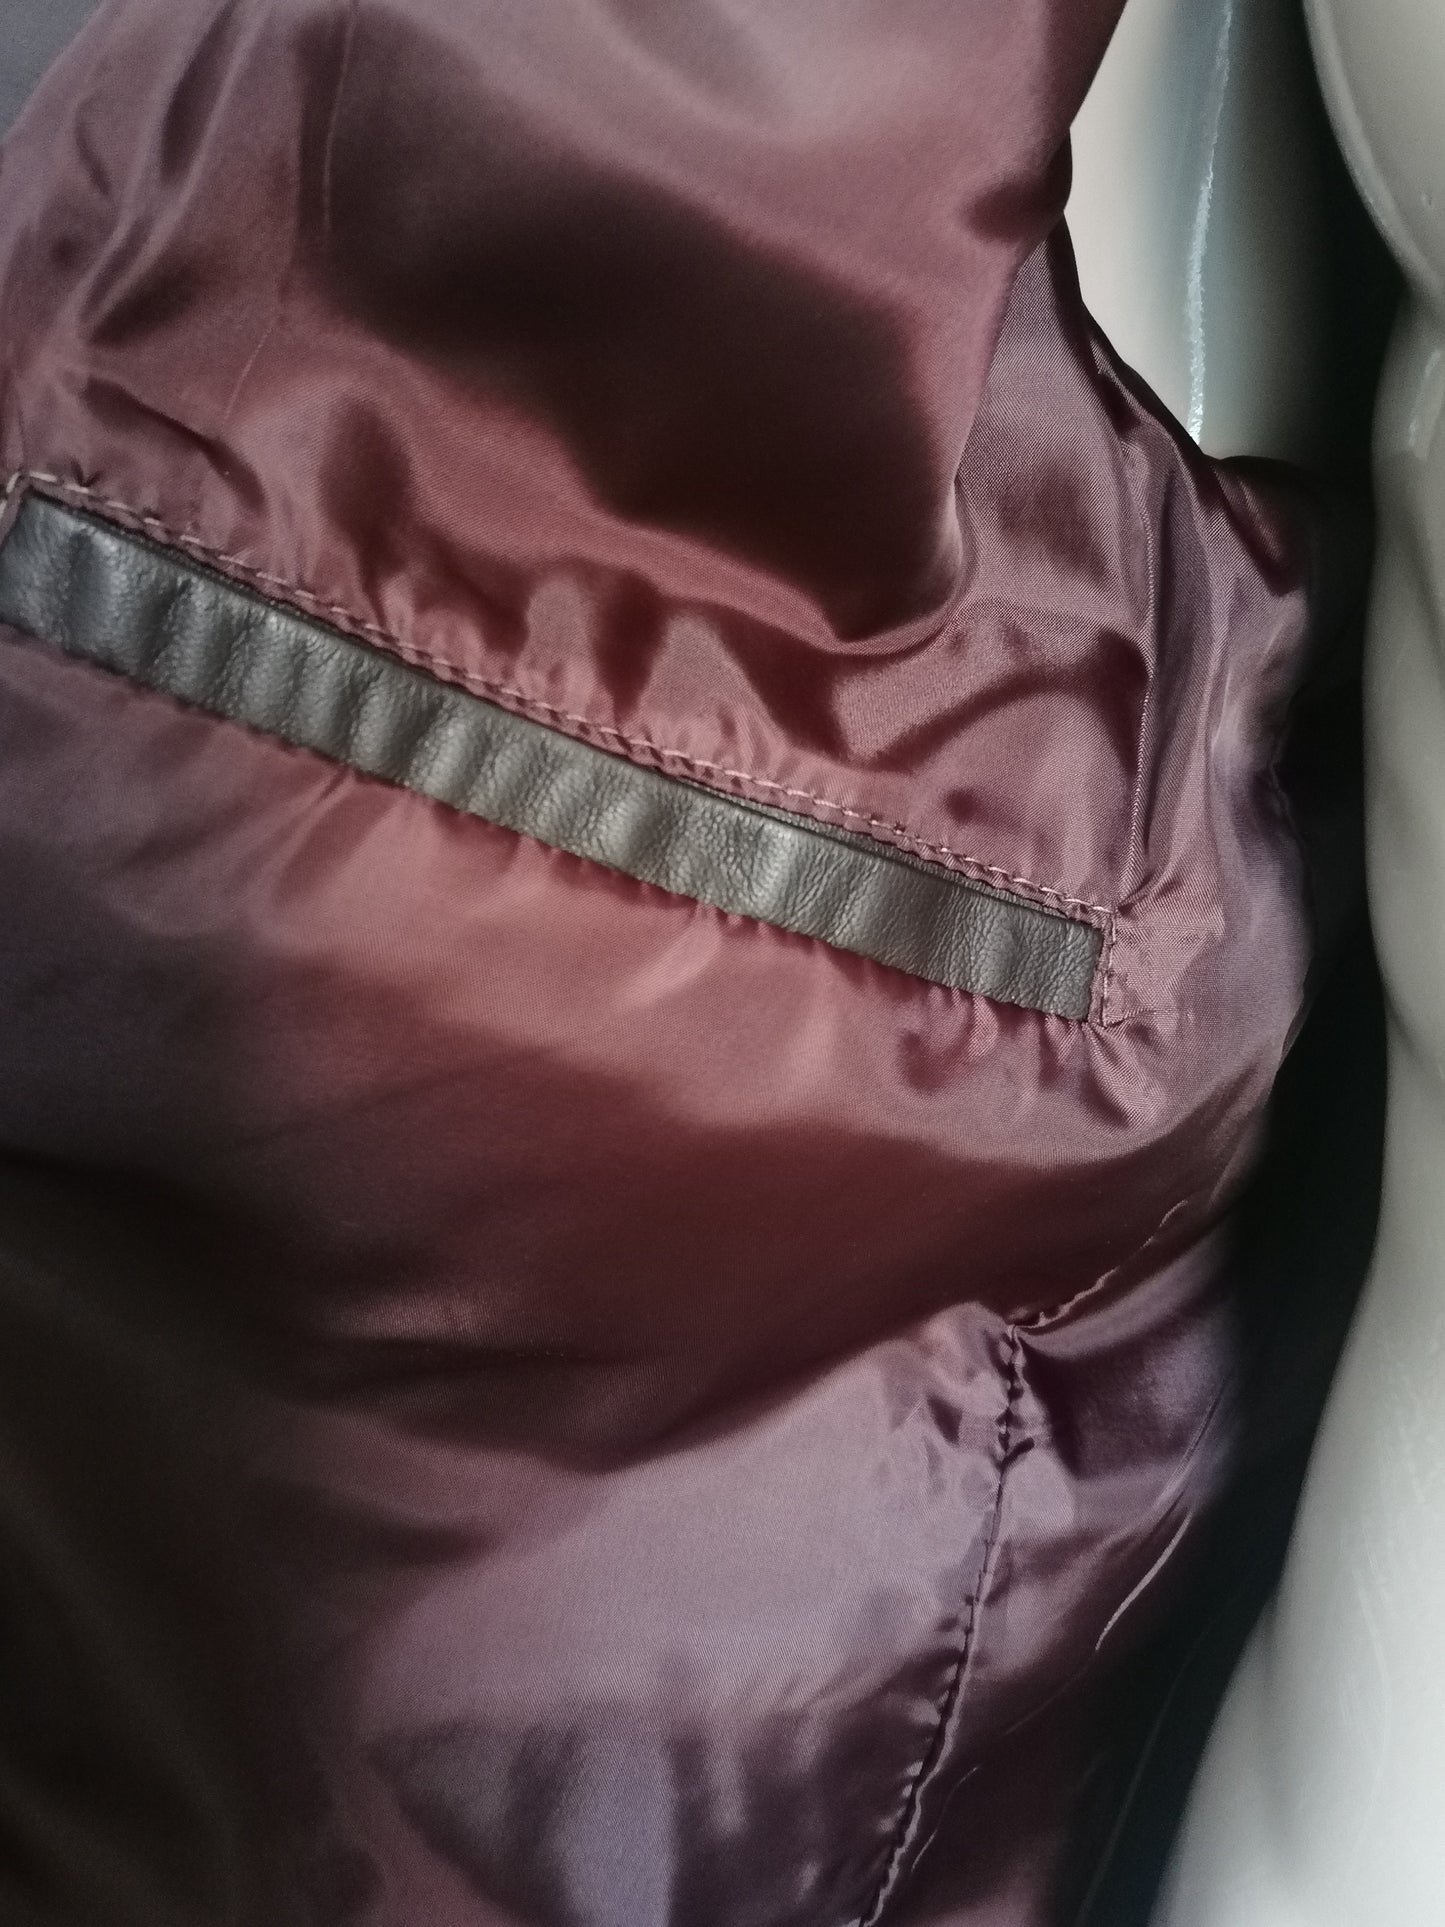 B Scelta: giacca di pelle LEderMode L&B. Colorato marrone scuro. Dimensioni 54 / L. Spot sulla manica.